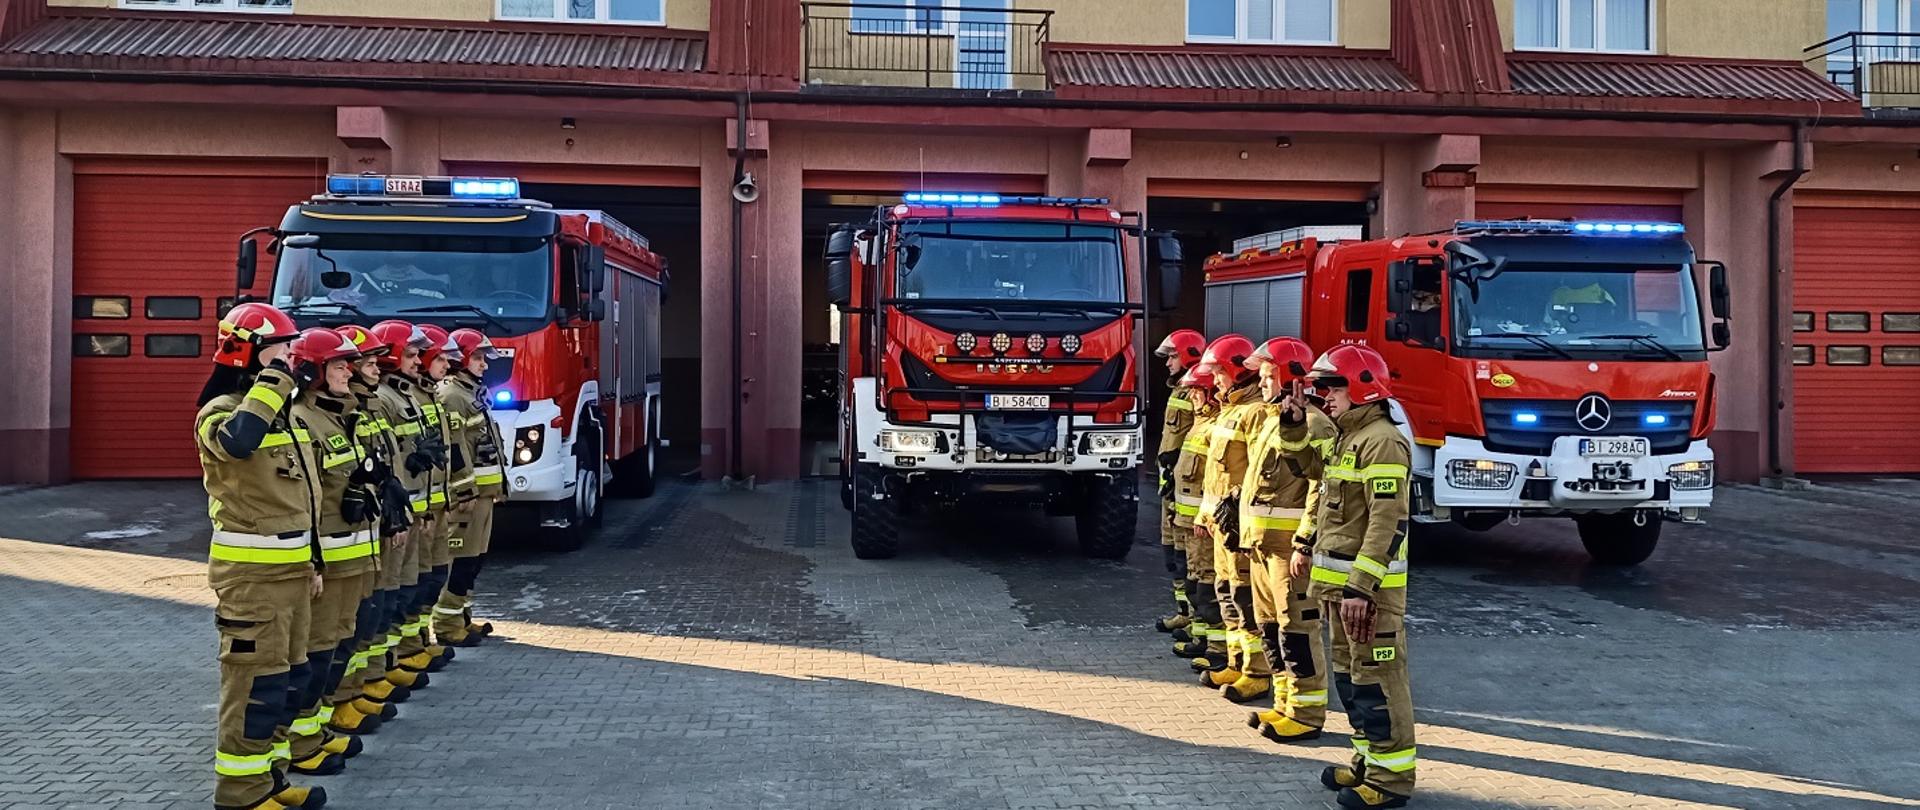 Zdjęcie strażaków w tle samochody pożarnicze i budynek